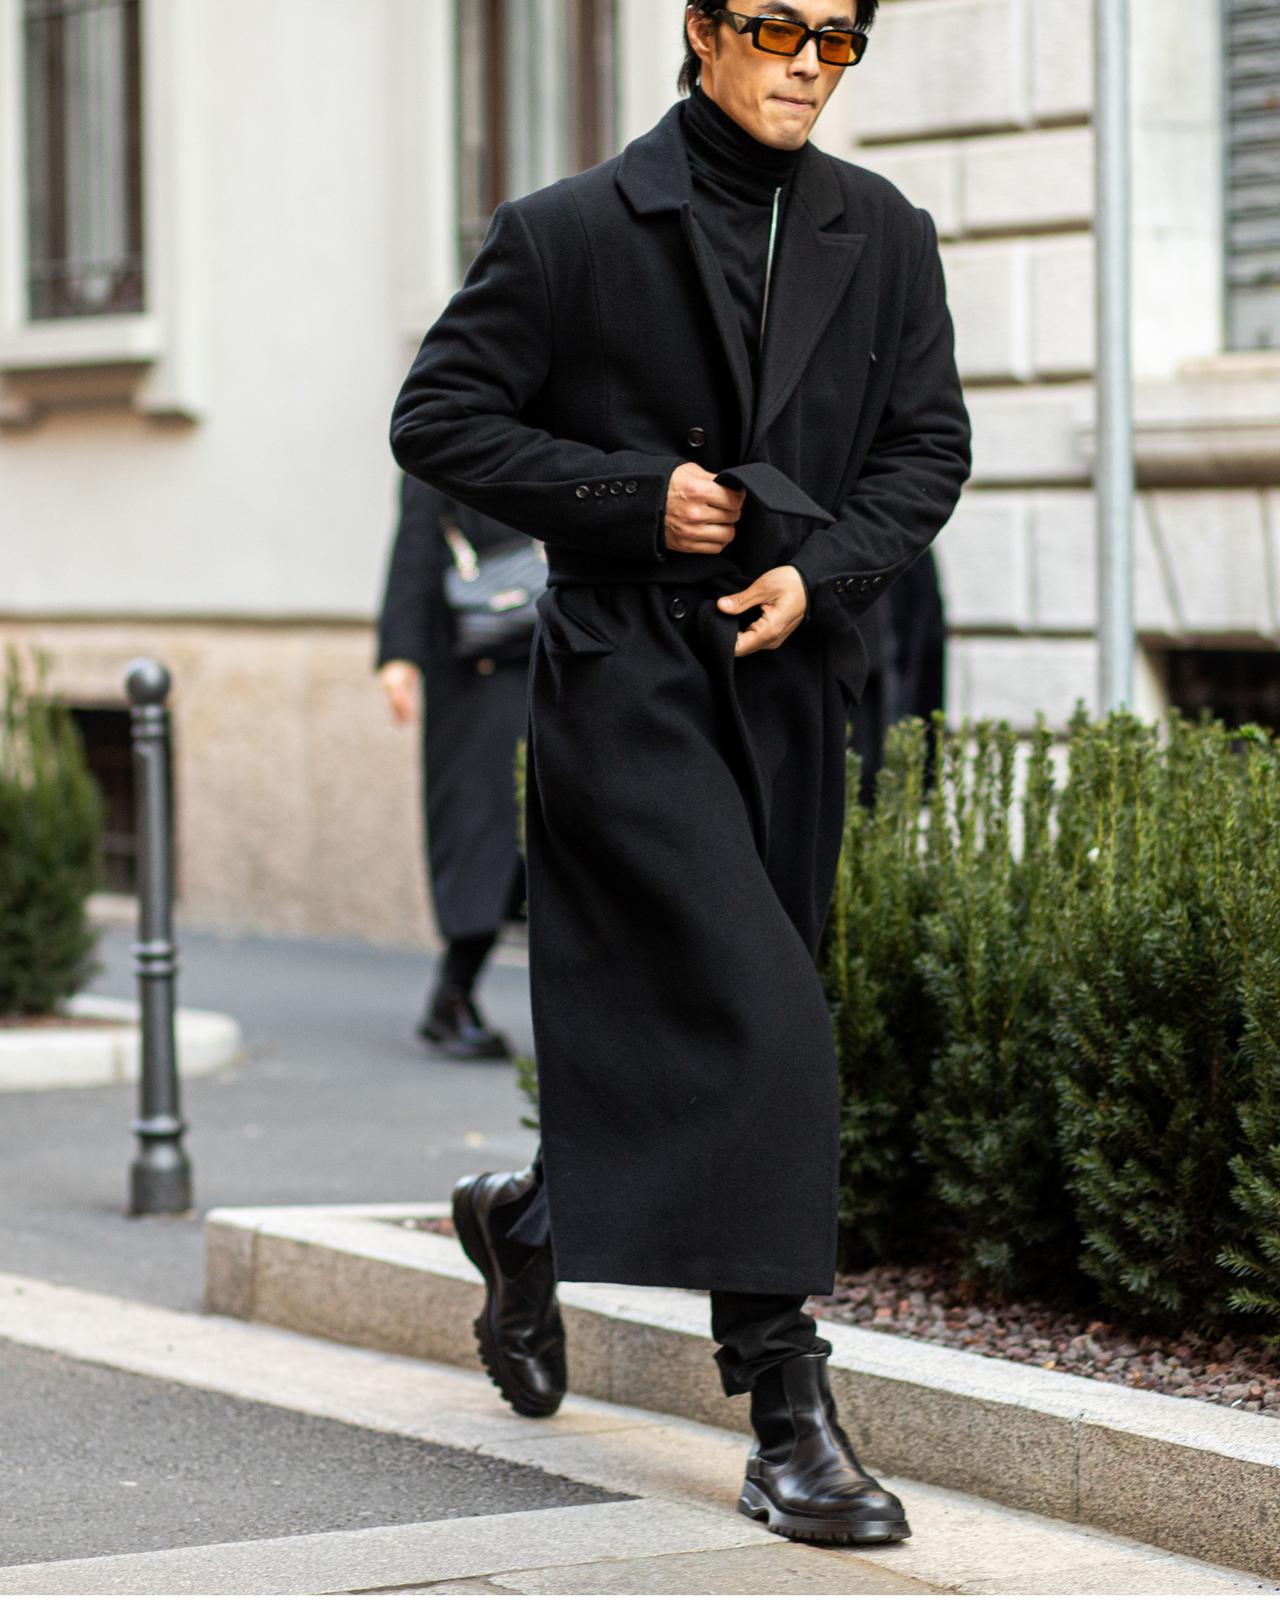 A man in a black coat walking down a street